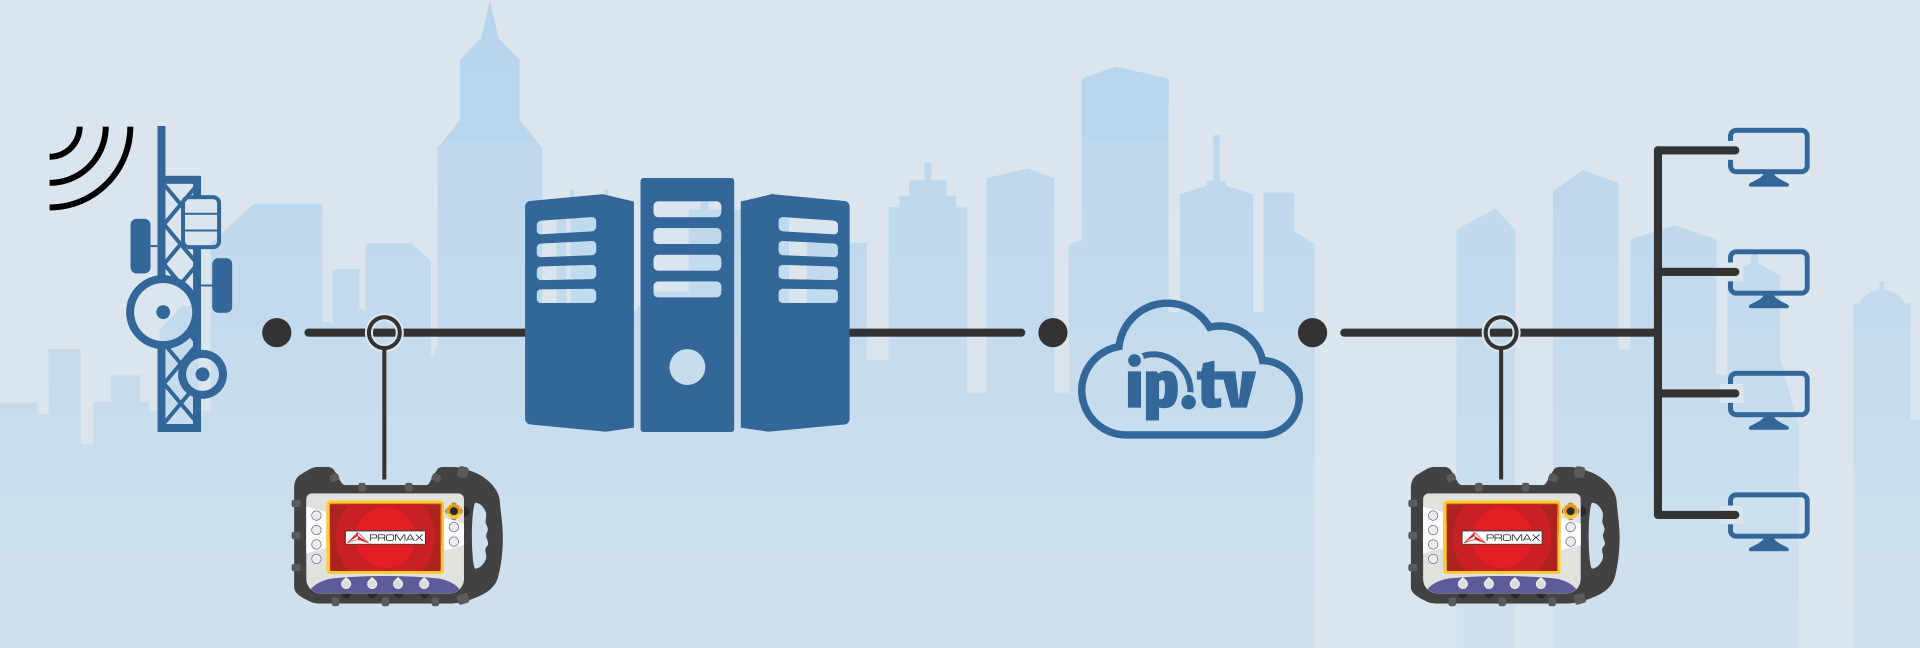 La solution globale de test et de mesure pour les opérateurs de réseaux IPTV et OTT